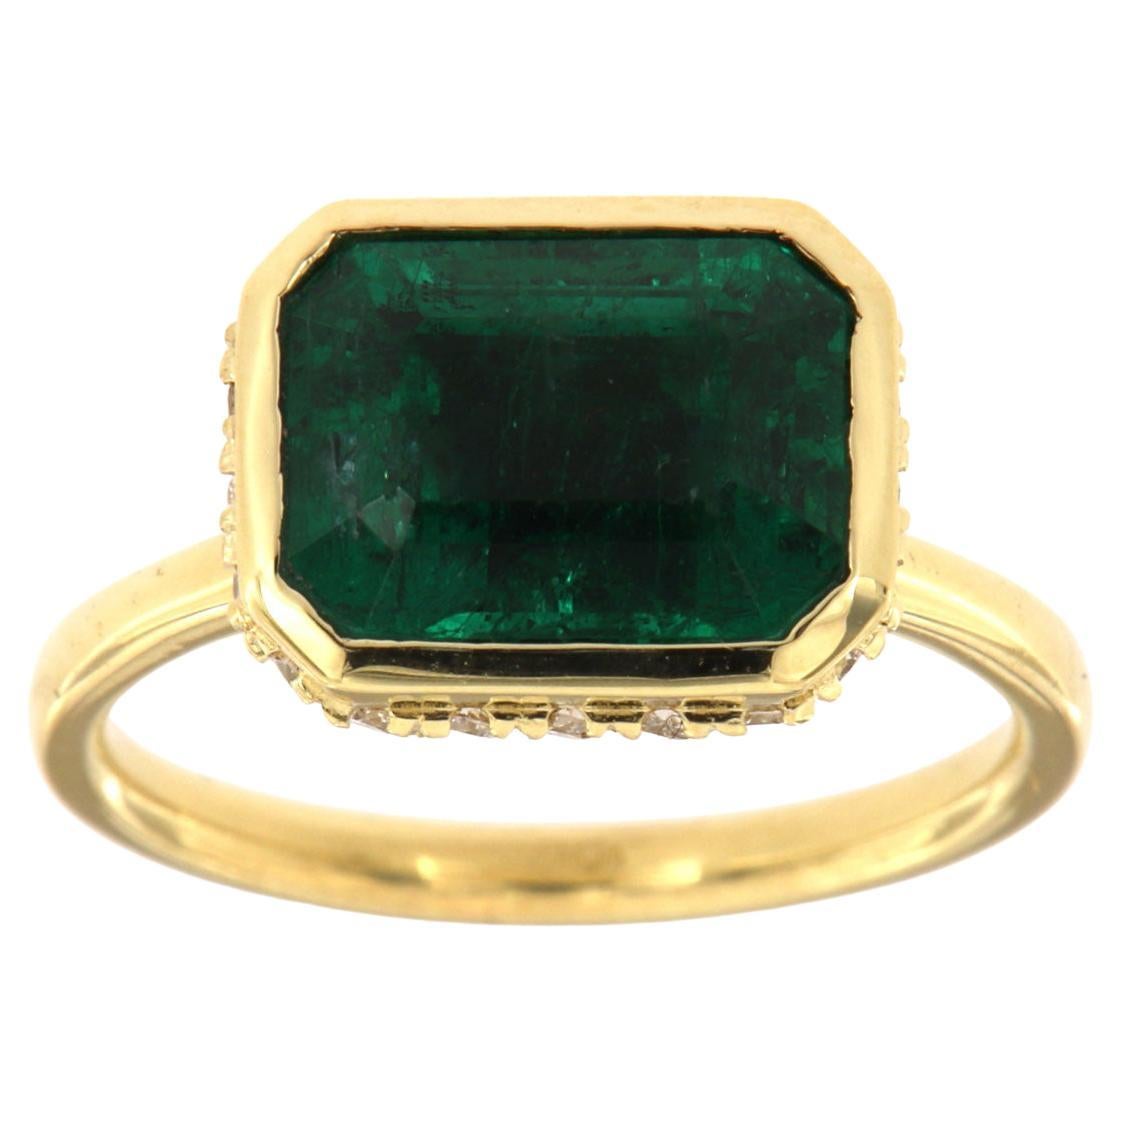 GIA-zertifizierter 3,93 Karat grüner Smaragd in der Lünette in 18K Gelbgold Diamantring